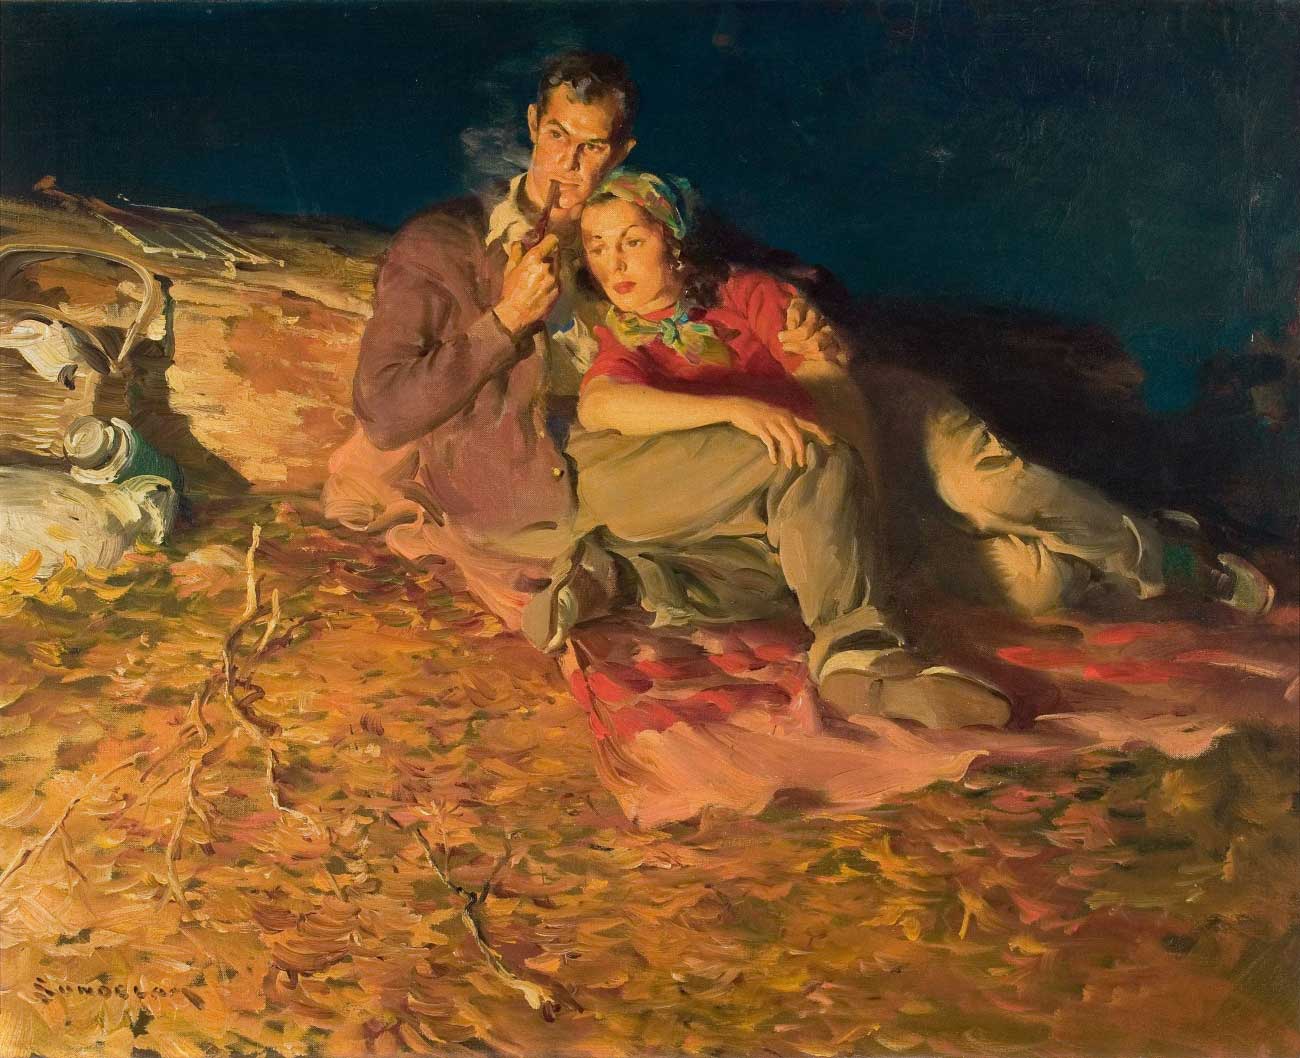 Campfire Romance by Haddon Hubbard Sundblom